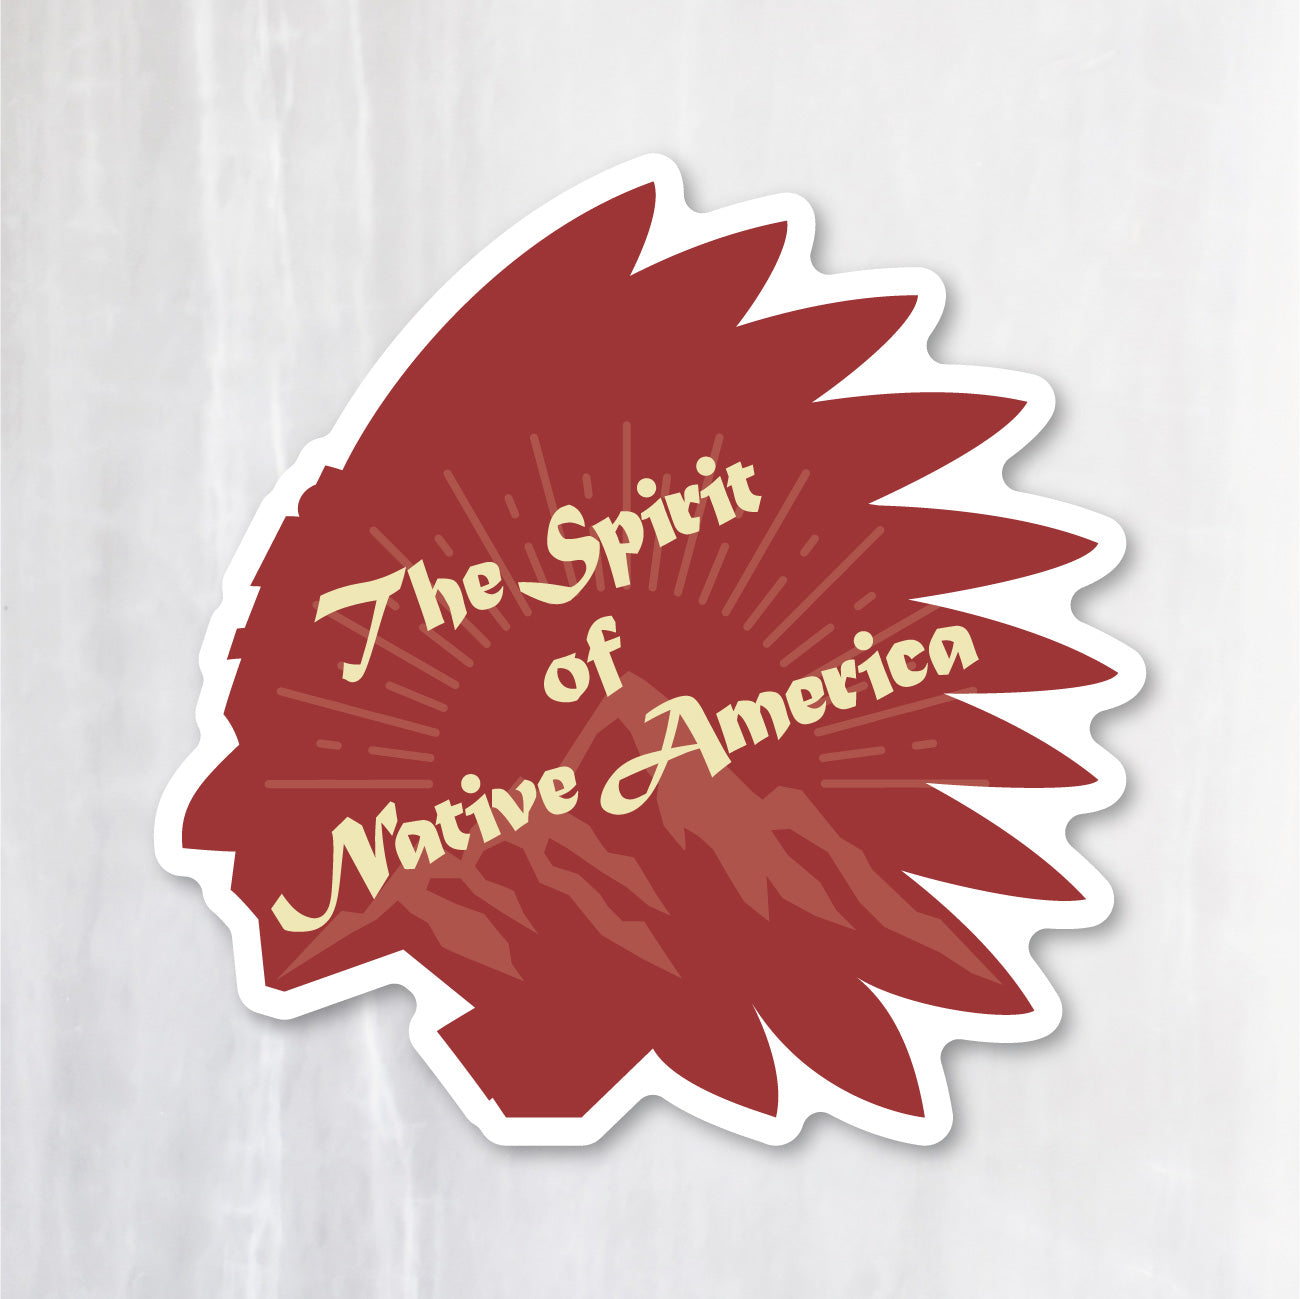 ネイティブアメリカン シールステッカー《The Spirit of Native America》（超防水・防滴 UVカット 屋外使用可 /S143）